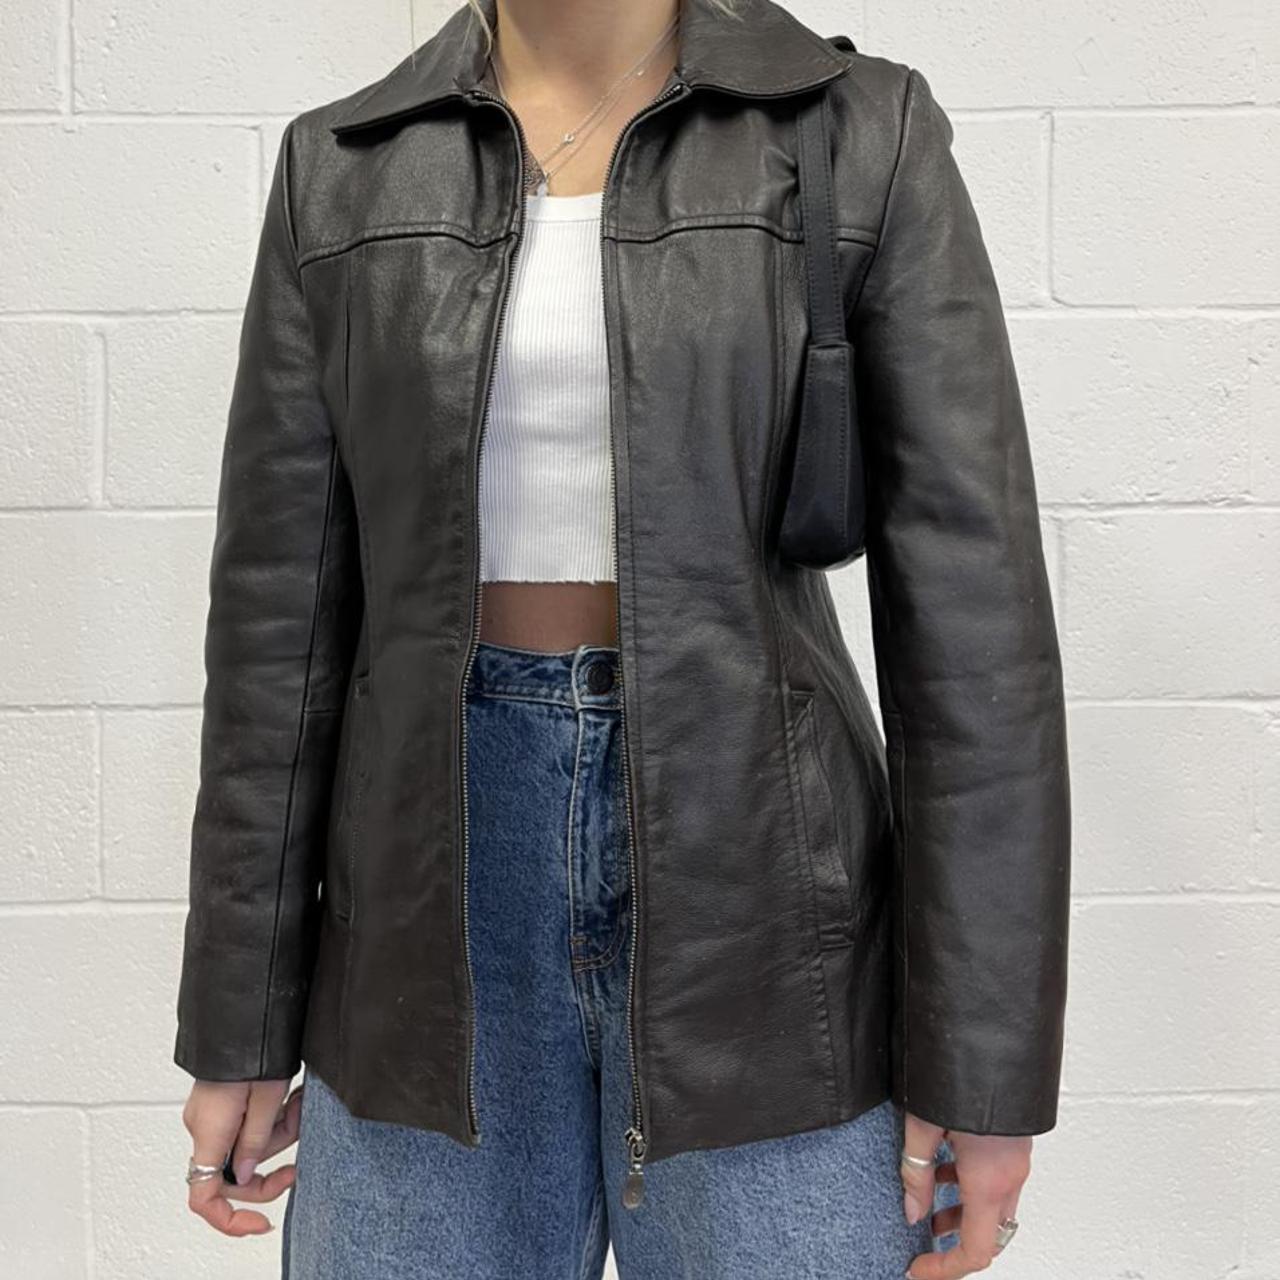 Vintage dark brown genuine leather zip up jacket,... - Depop